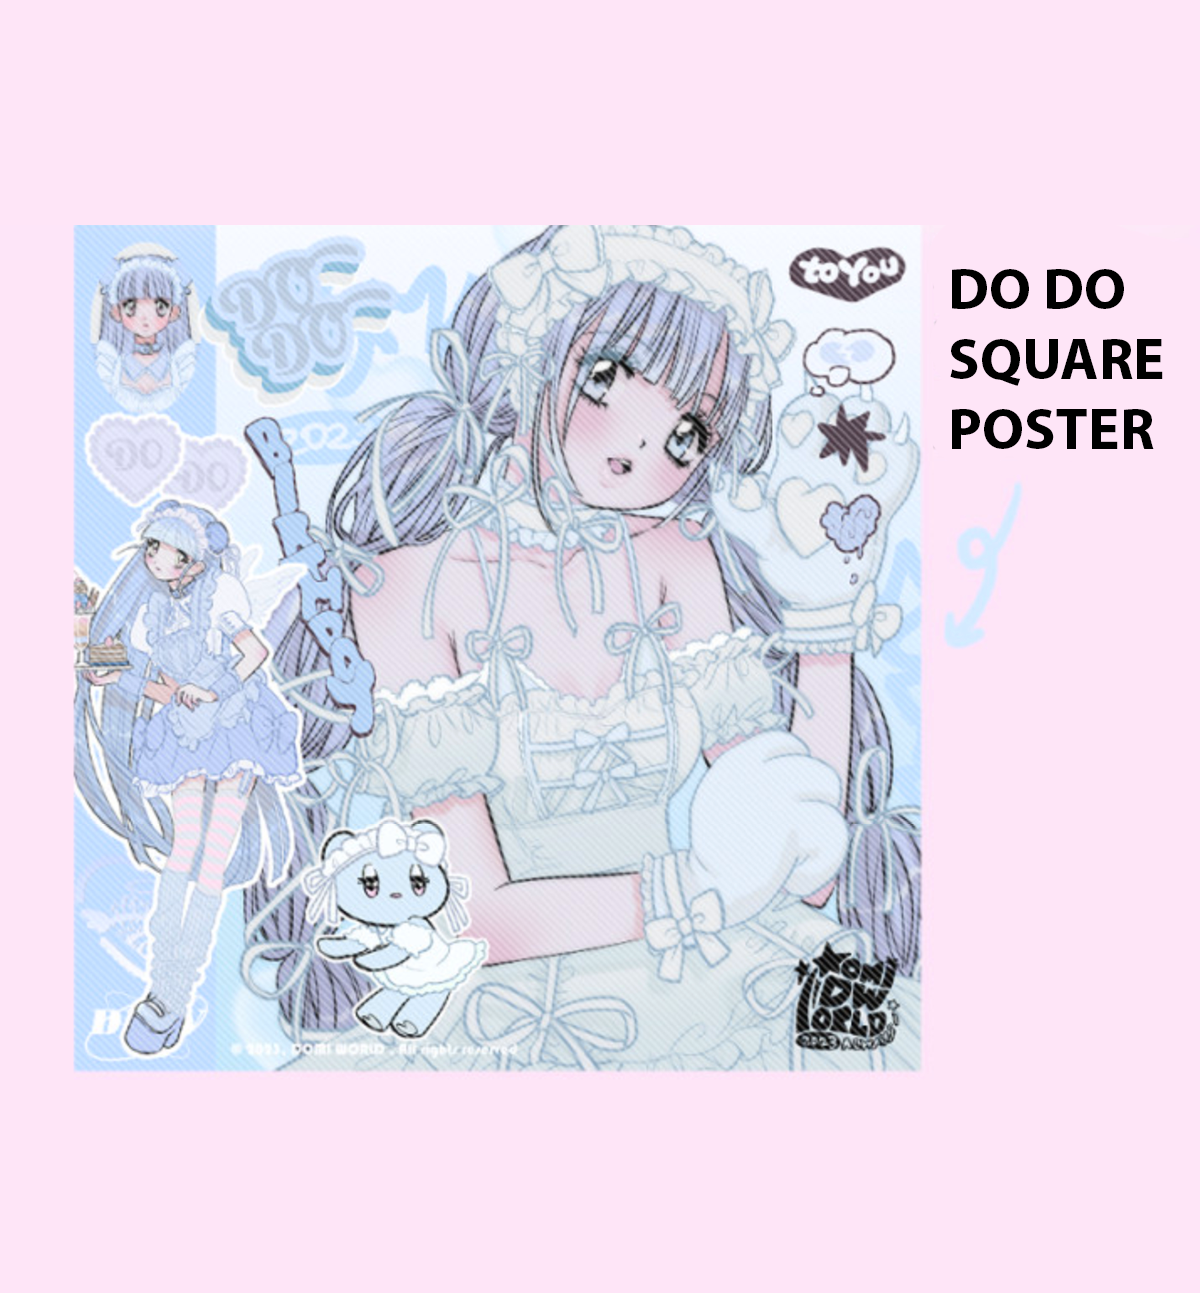 Domi World Dodo & Mimi Square Posters [2 Designs]